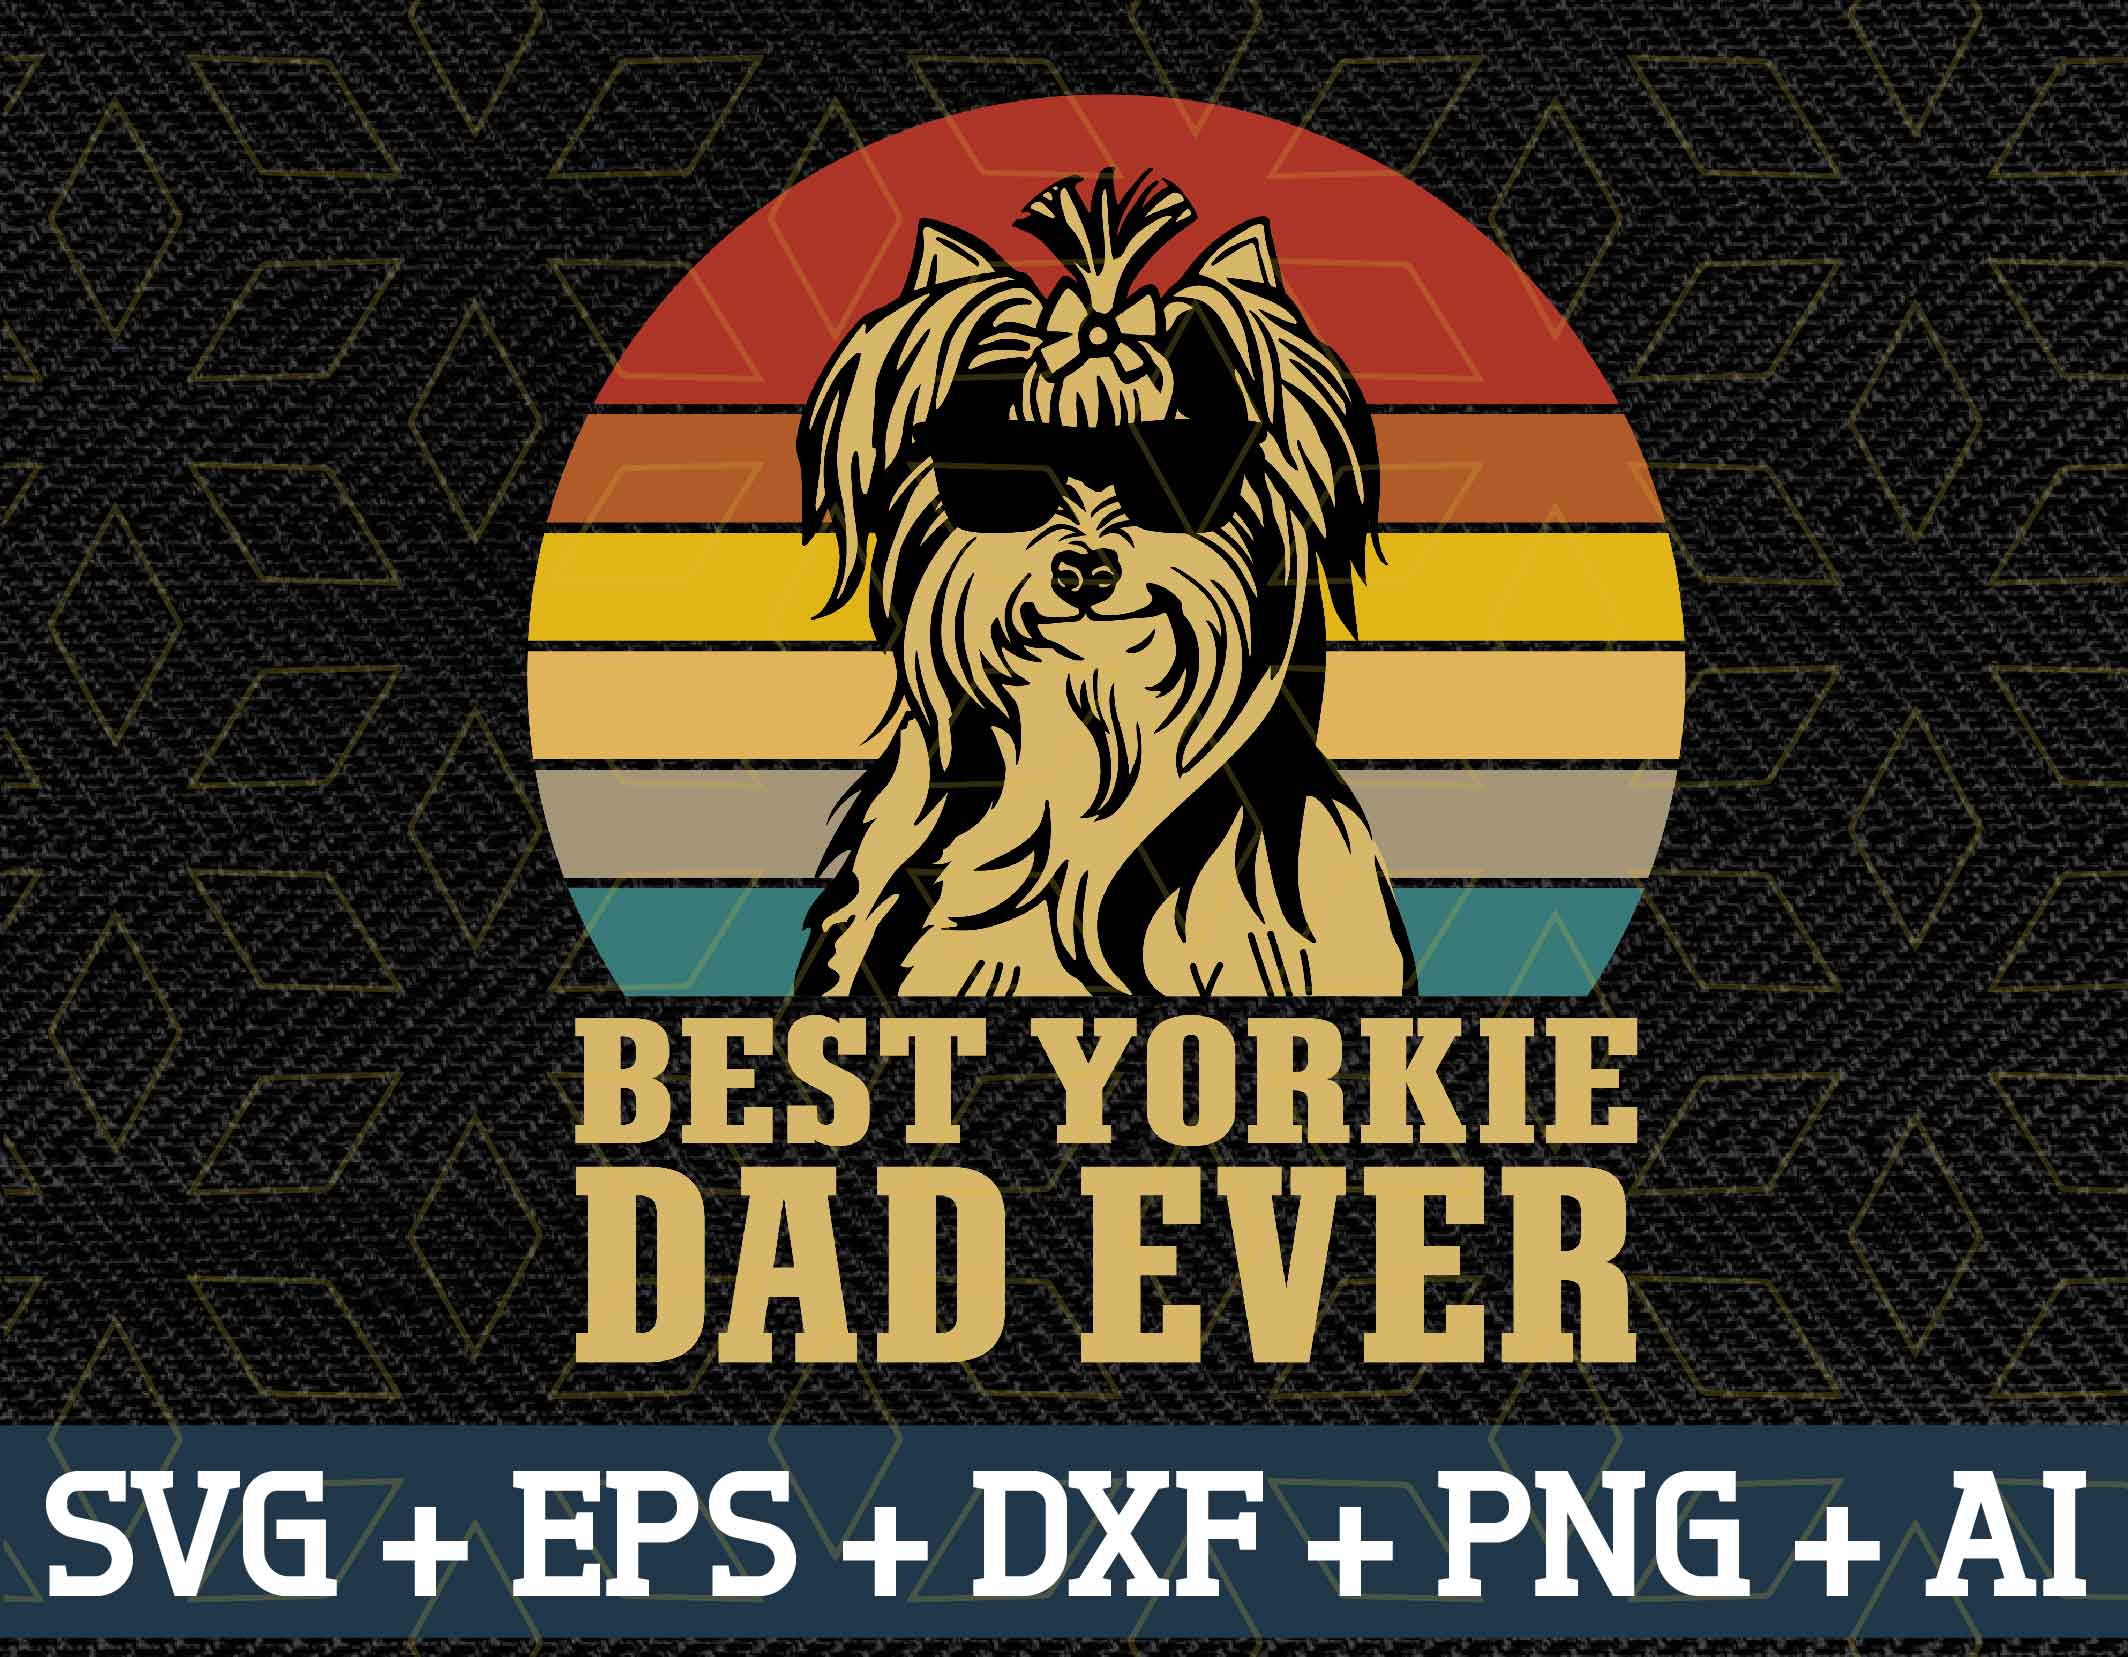 Download Best Yorkie dad ever svg, png, eps, dxf digital ...